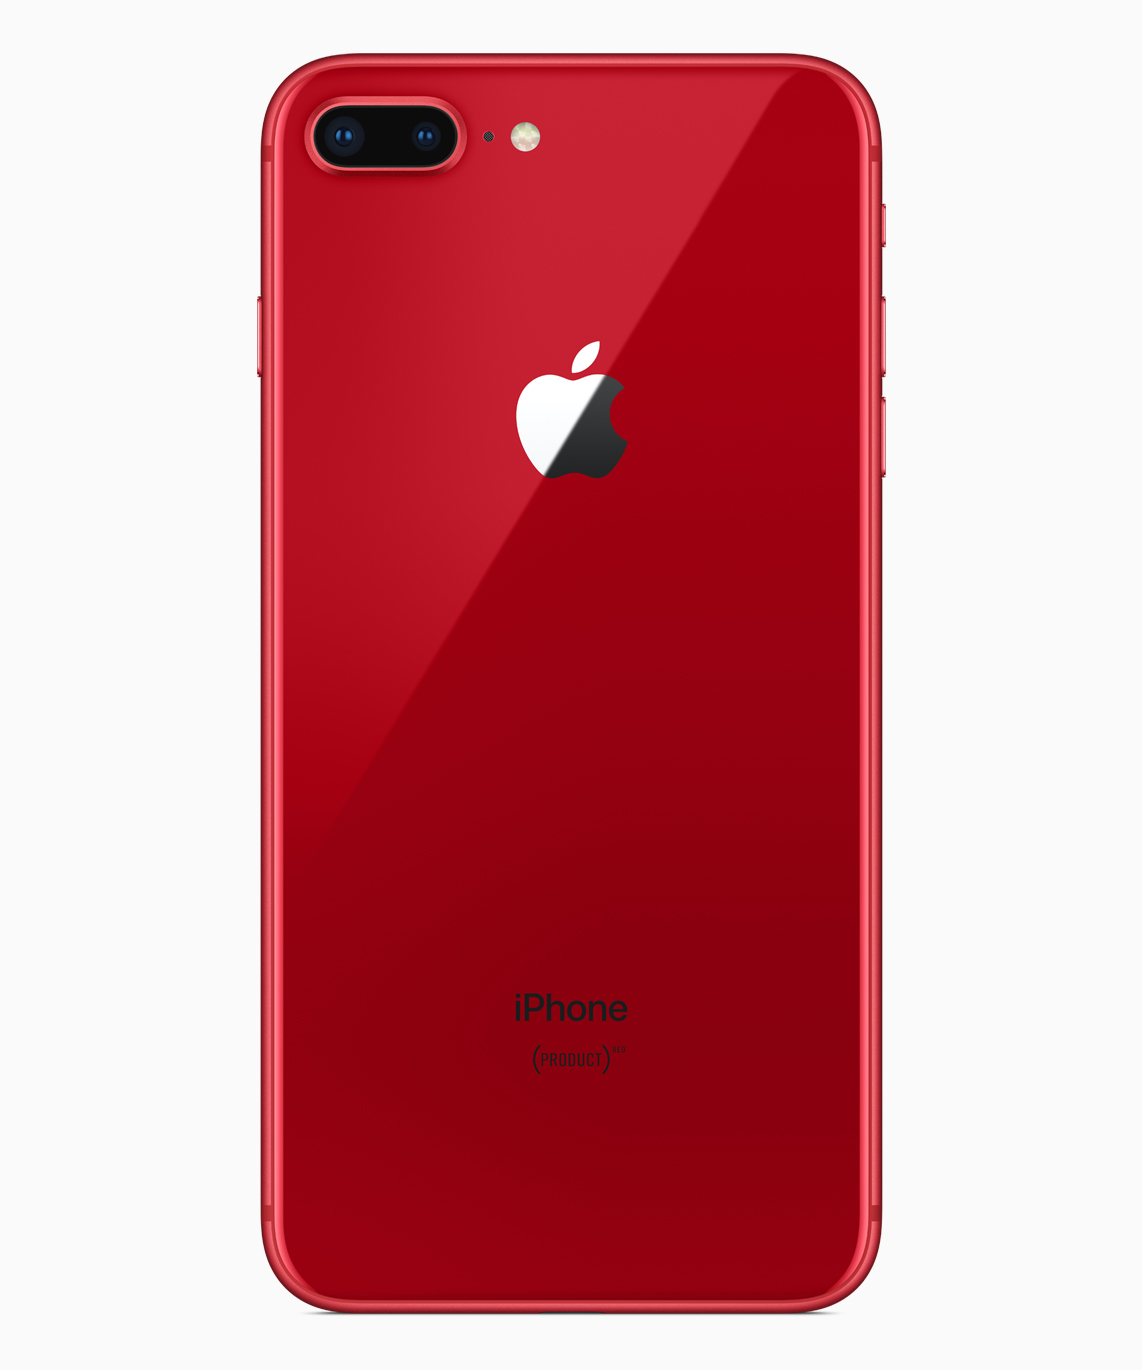 Product Redのiphone 8 Iphone 8 Plusの発売日はau ソフトバンクが4 13 ドコモが4 14 予約受付中 ガジェットショット